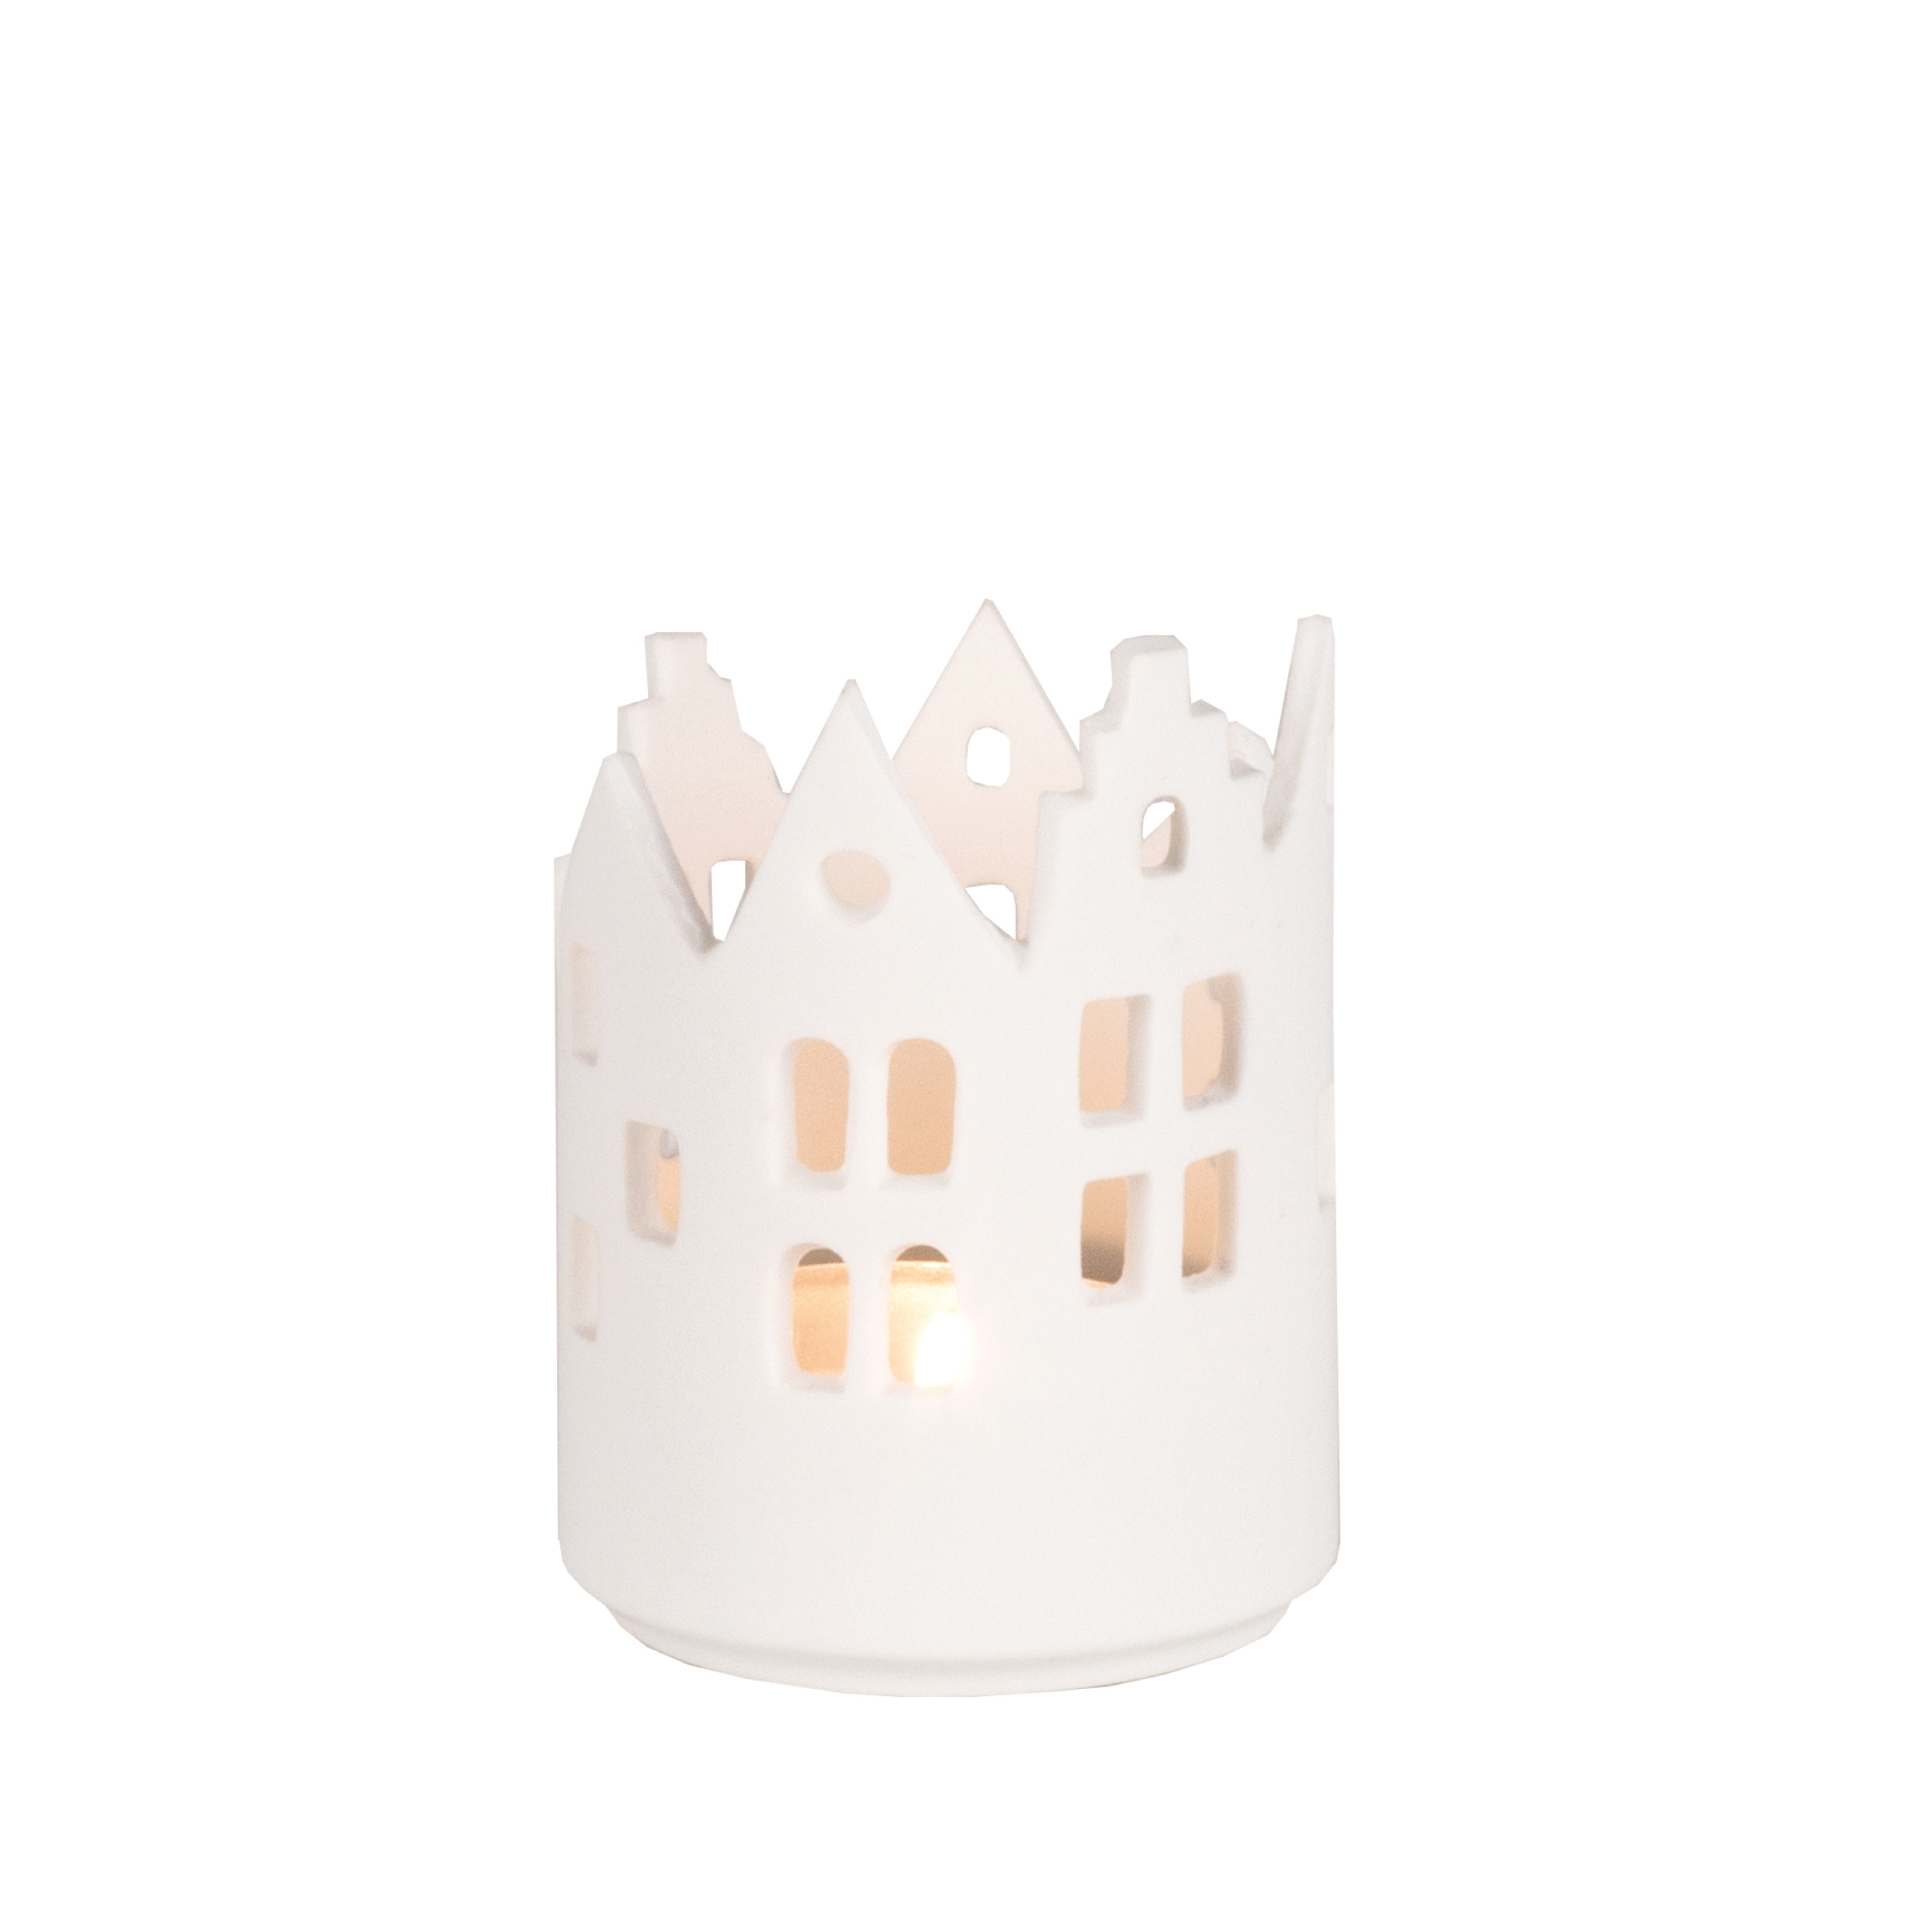 Räder Courtyard City Light in White Porcelain - Smallest City Light 